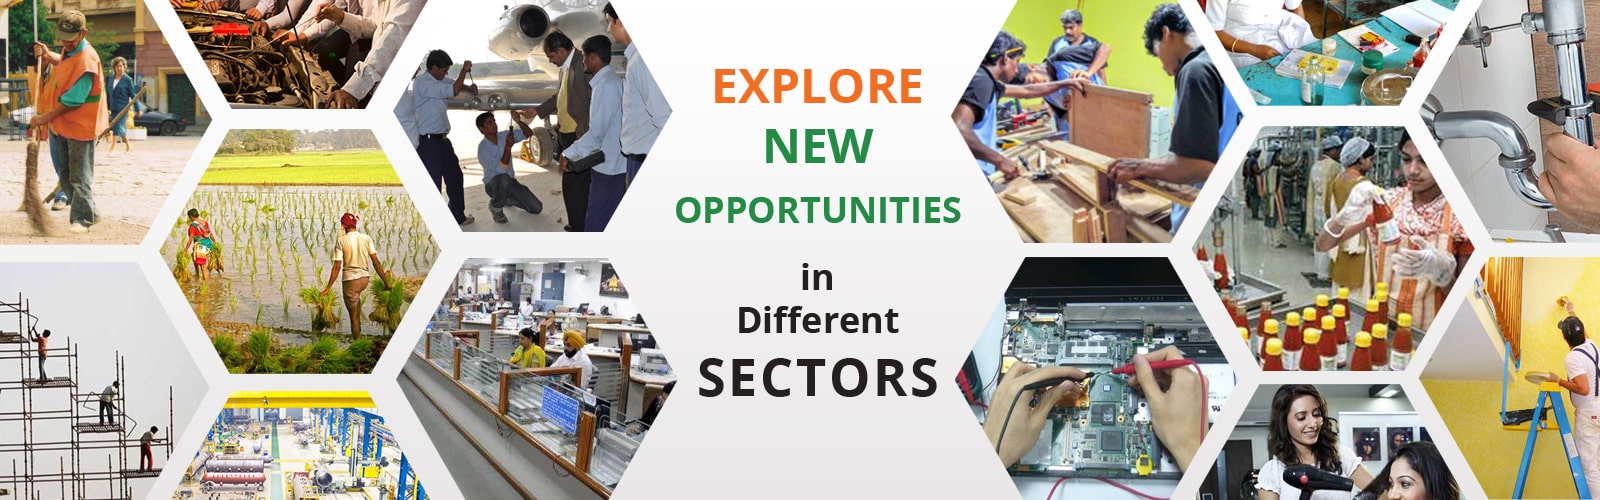 Explore New Opportutities in Different Sectors